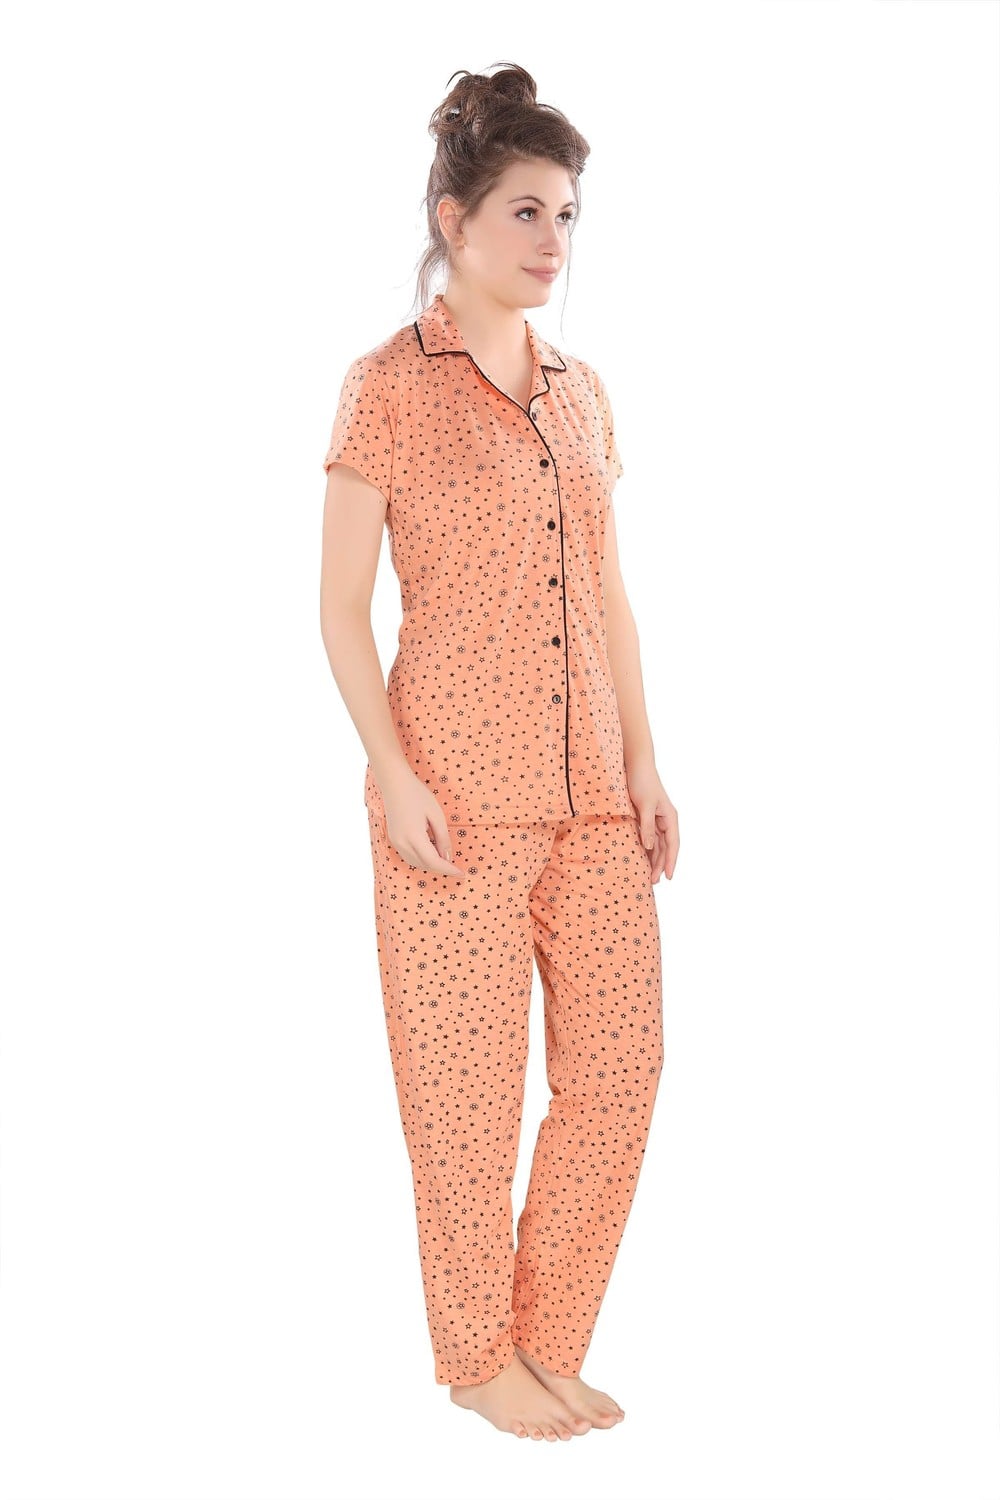 Pierre Donna Women's Cotton Pajama set With Pants - Women Sleepwear Orange Color - Dealz Souq